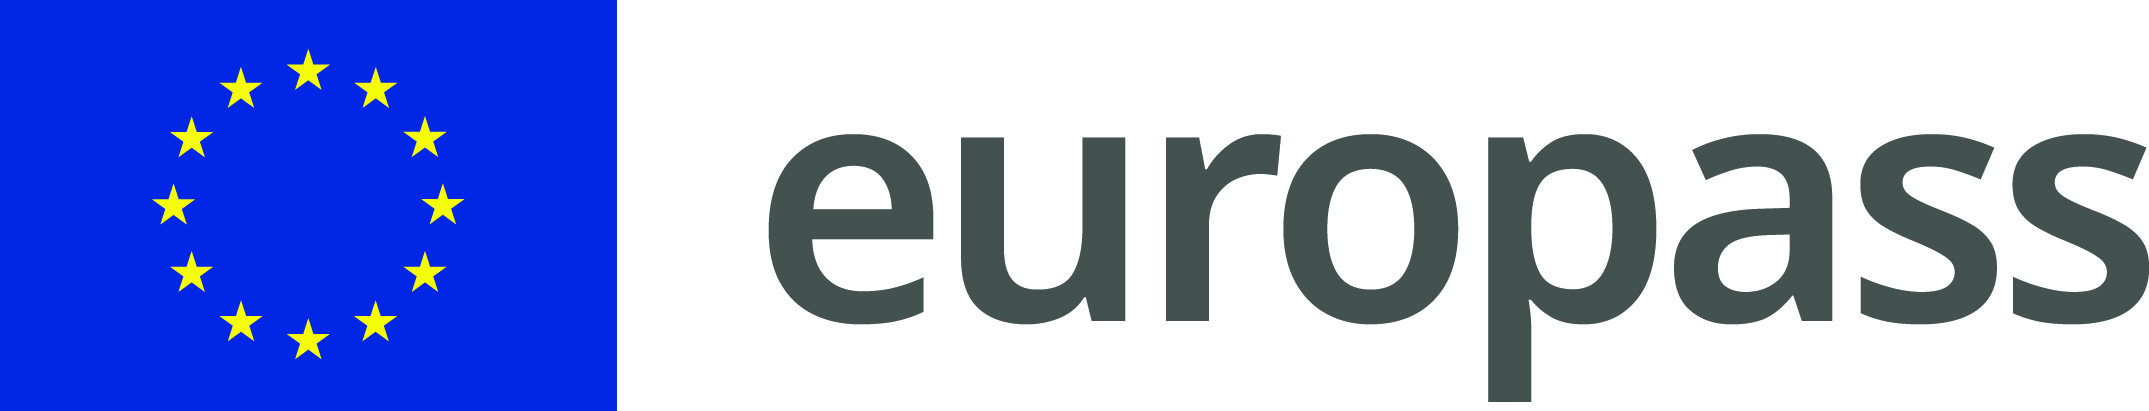 logo europass barevne 2020 CMYK